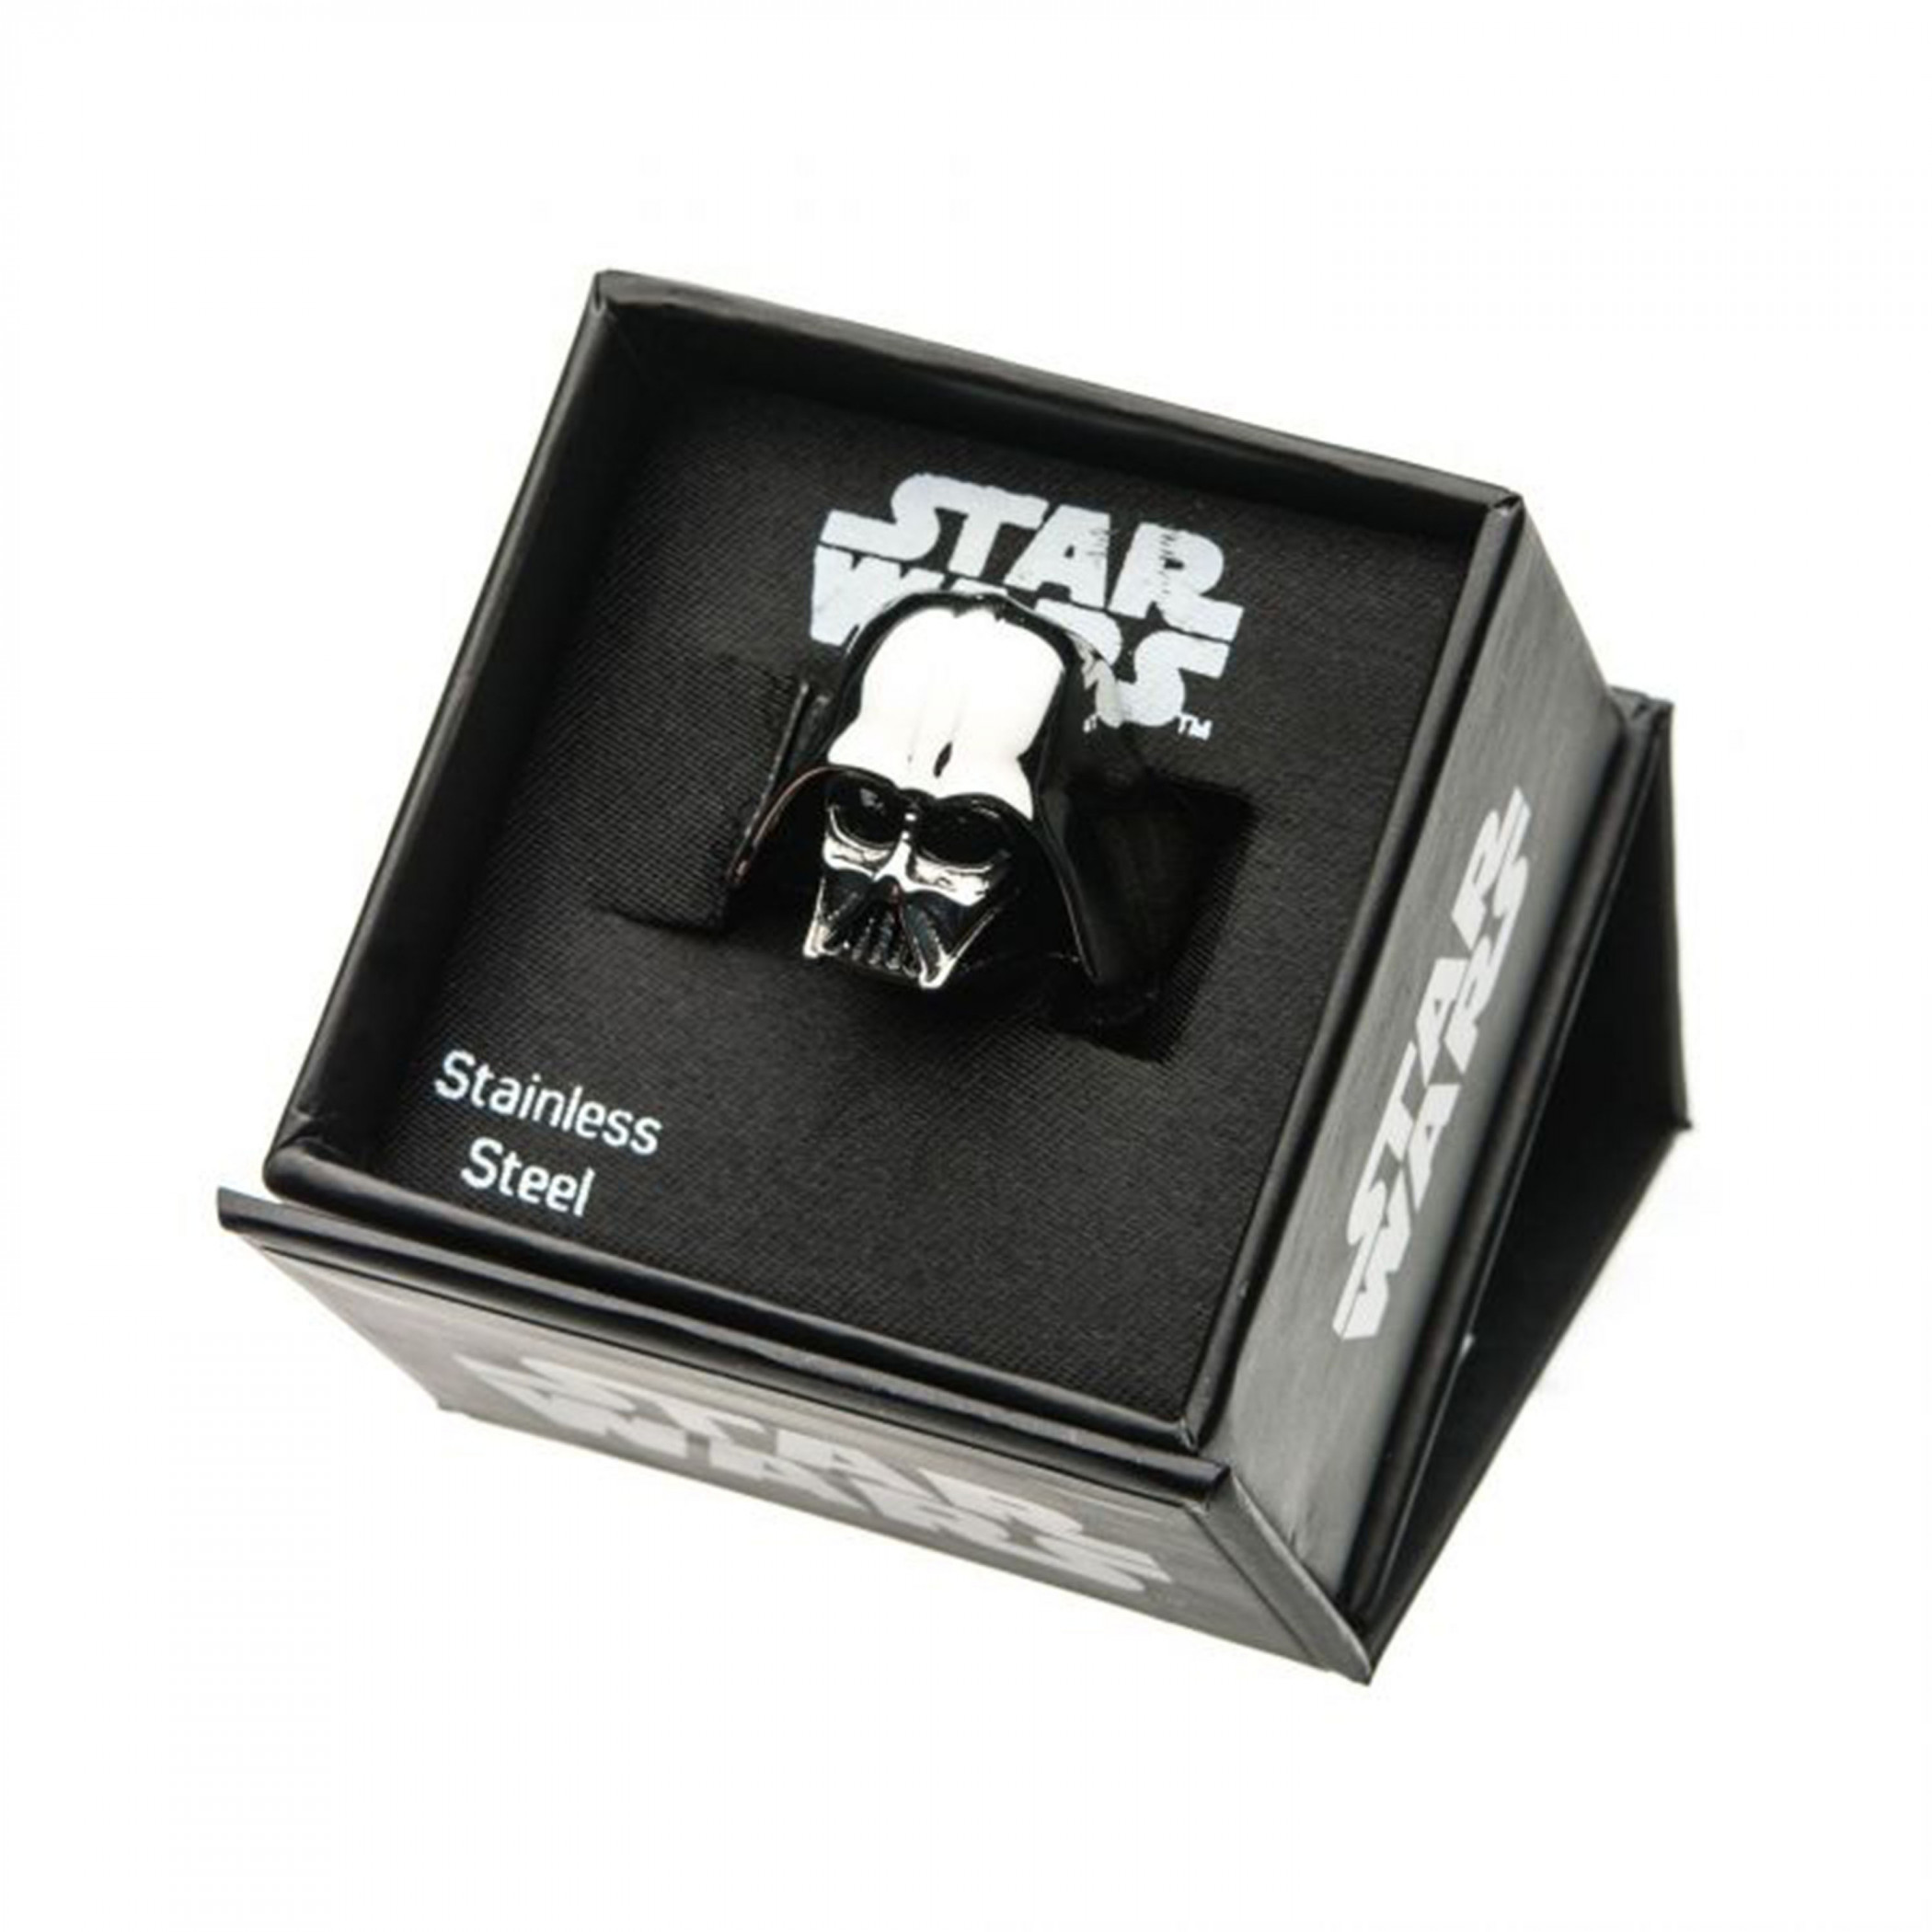 Star Wars Darth Vader Silver Helmet Ring